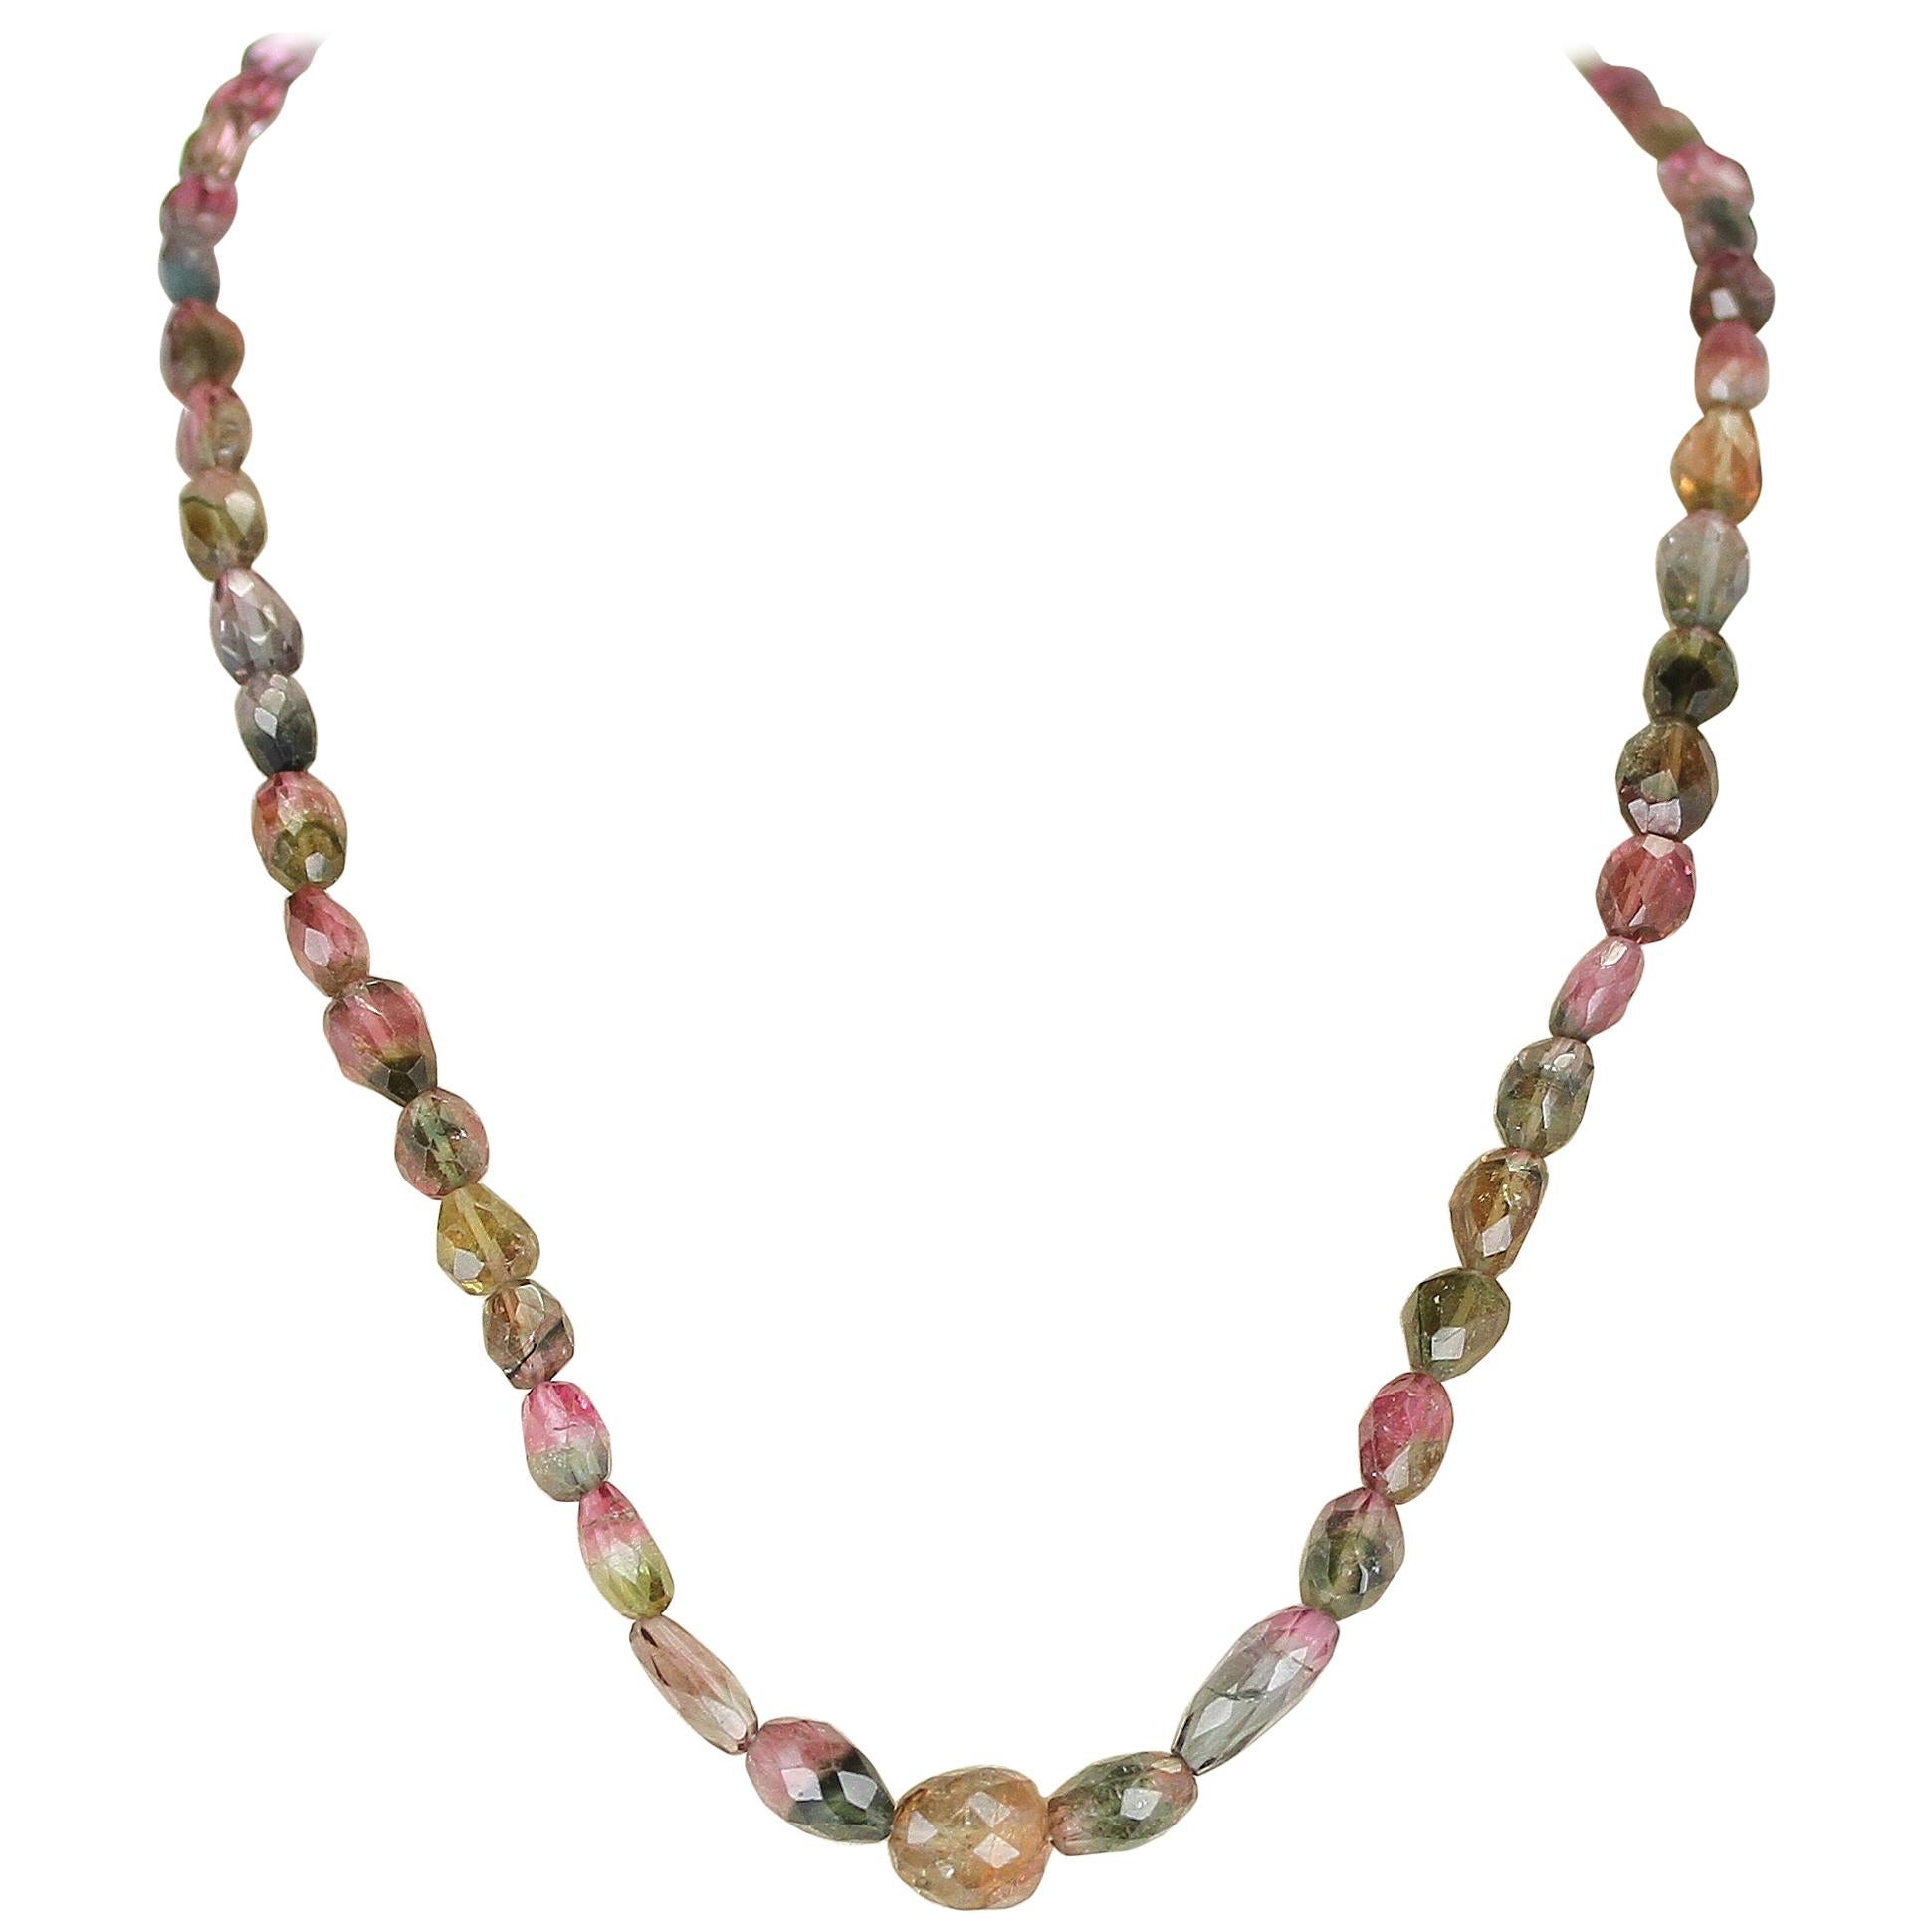 Raw Watermelon Tourmaline Necklace - Uniquelan Jewelry